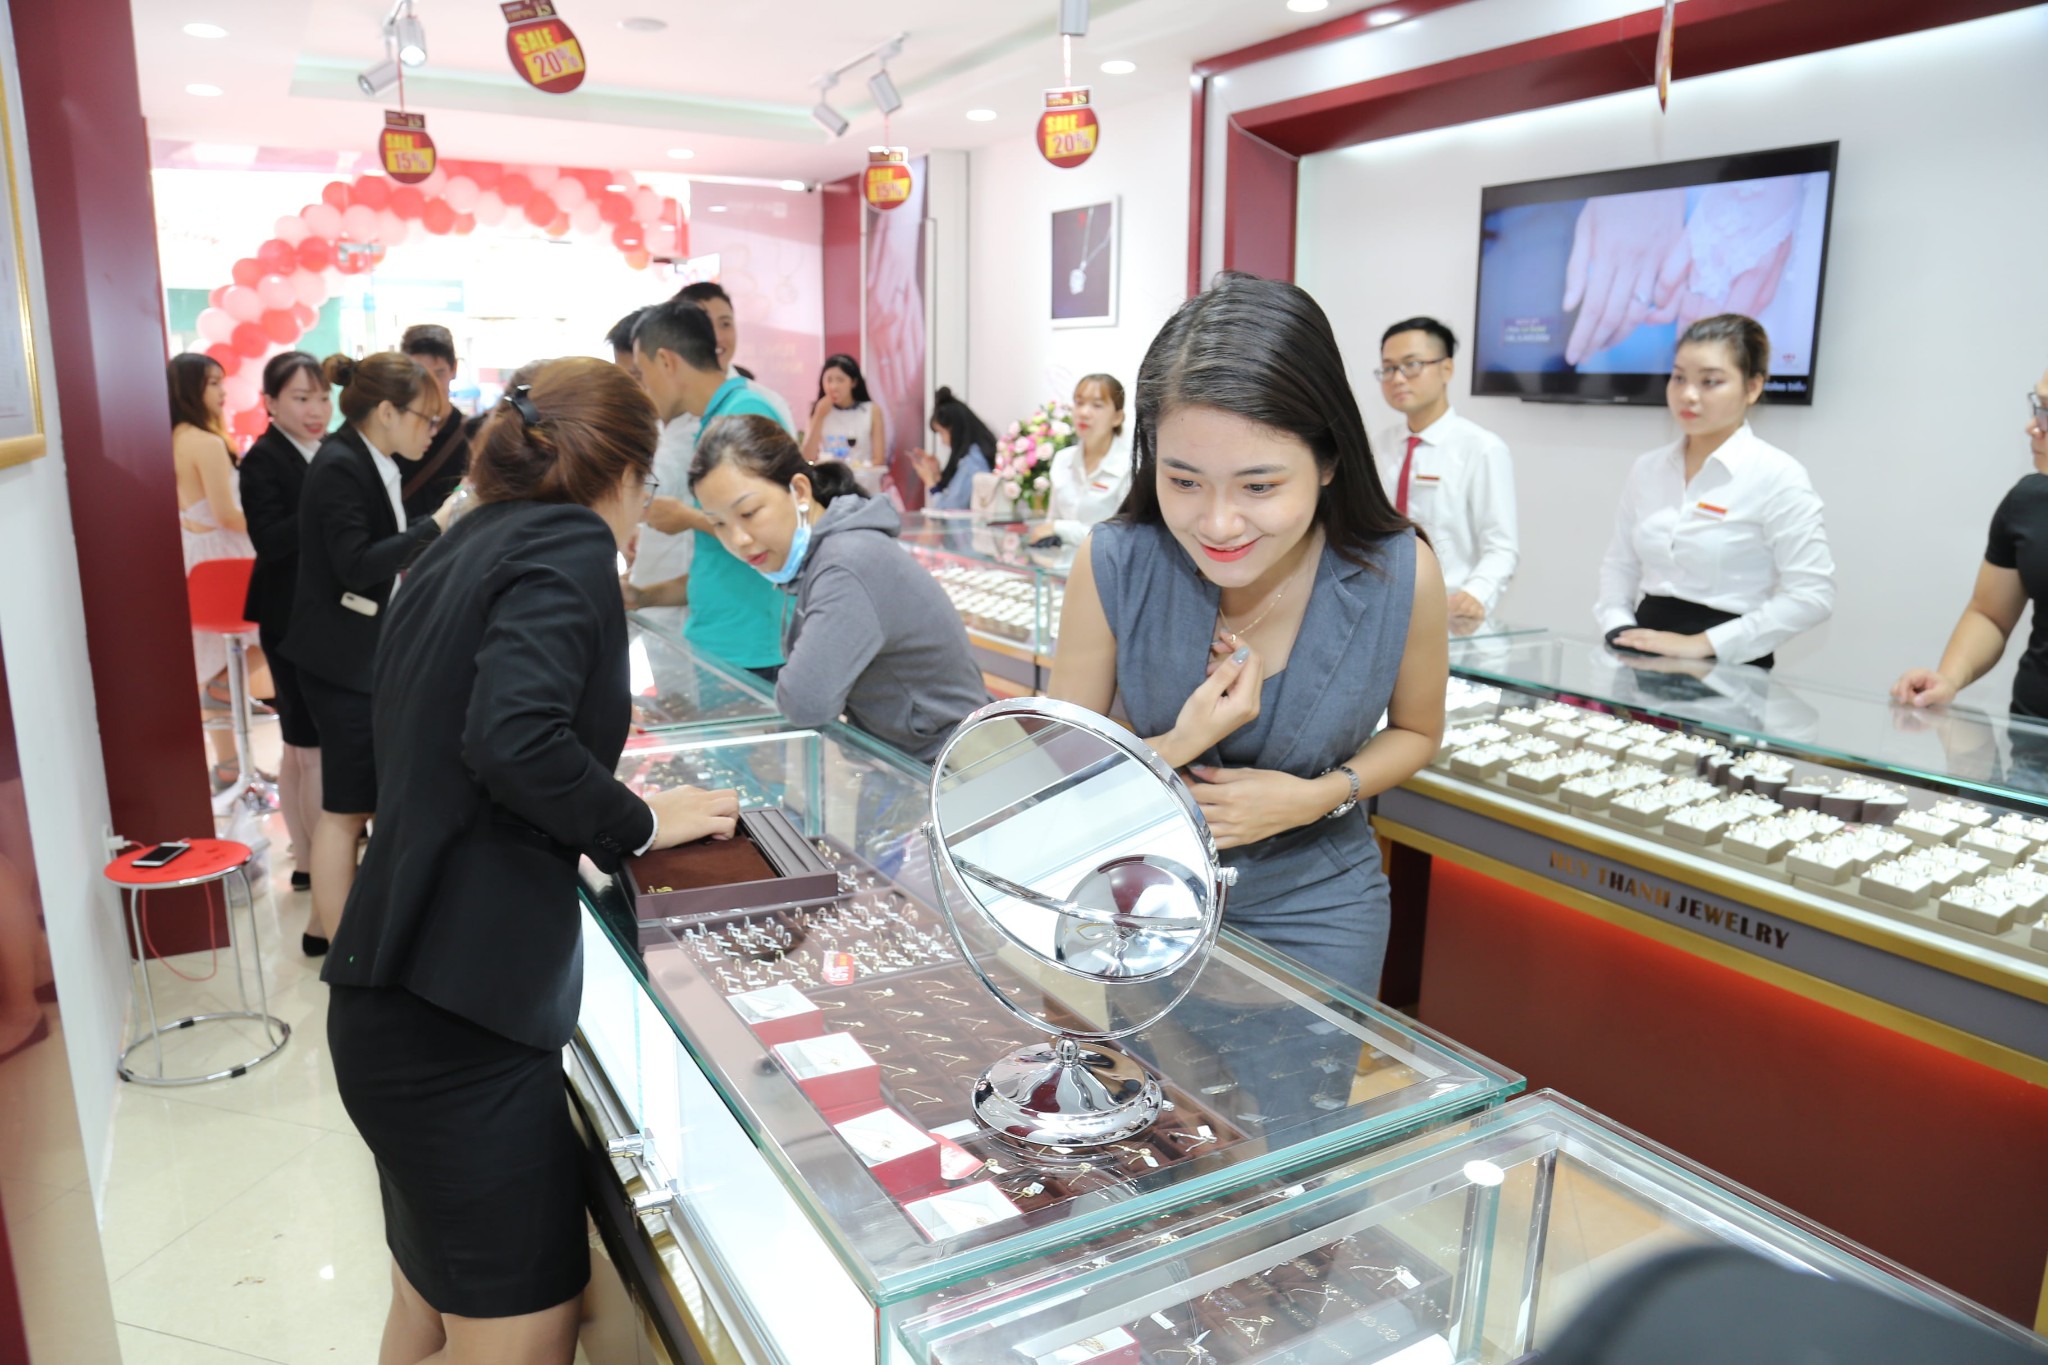 Huy Thanh Jewelry Khai Trương Showroom Tại Thái Nguyên